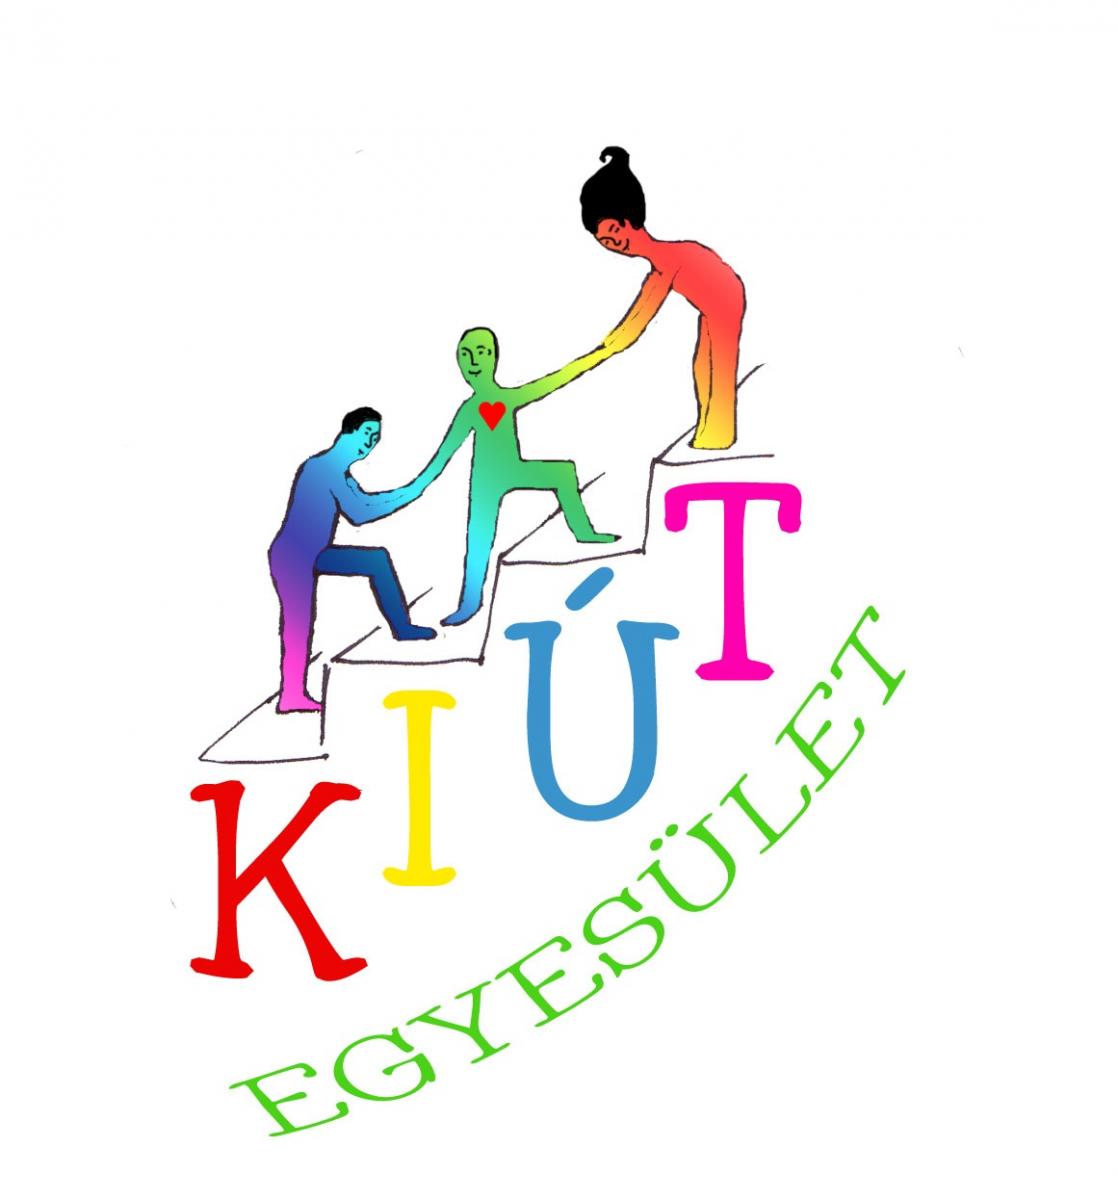 kiut_logo.jpg